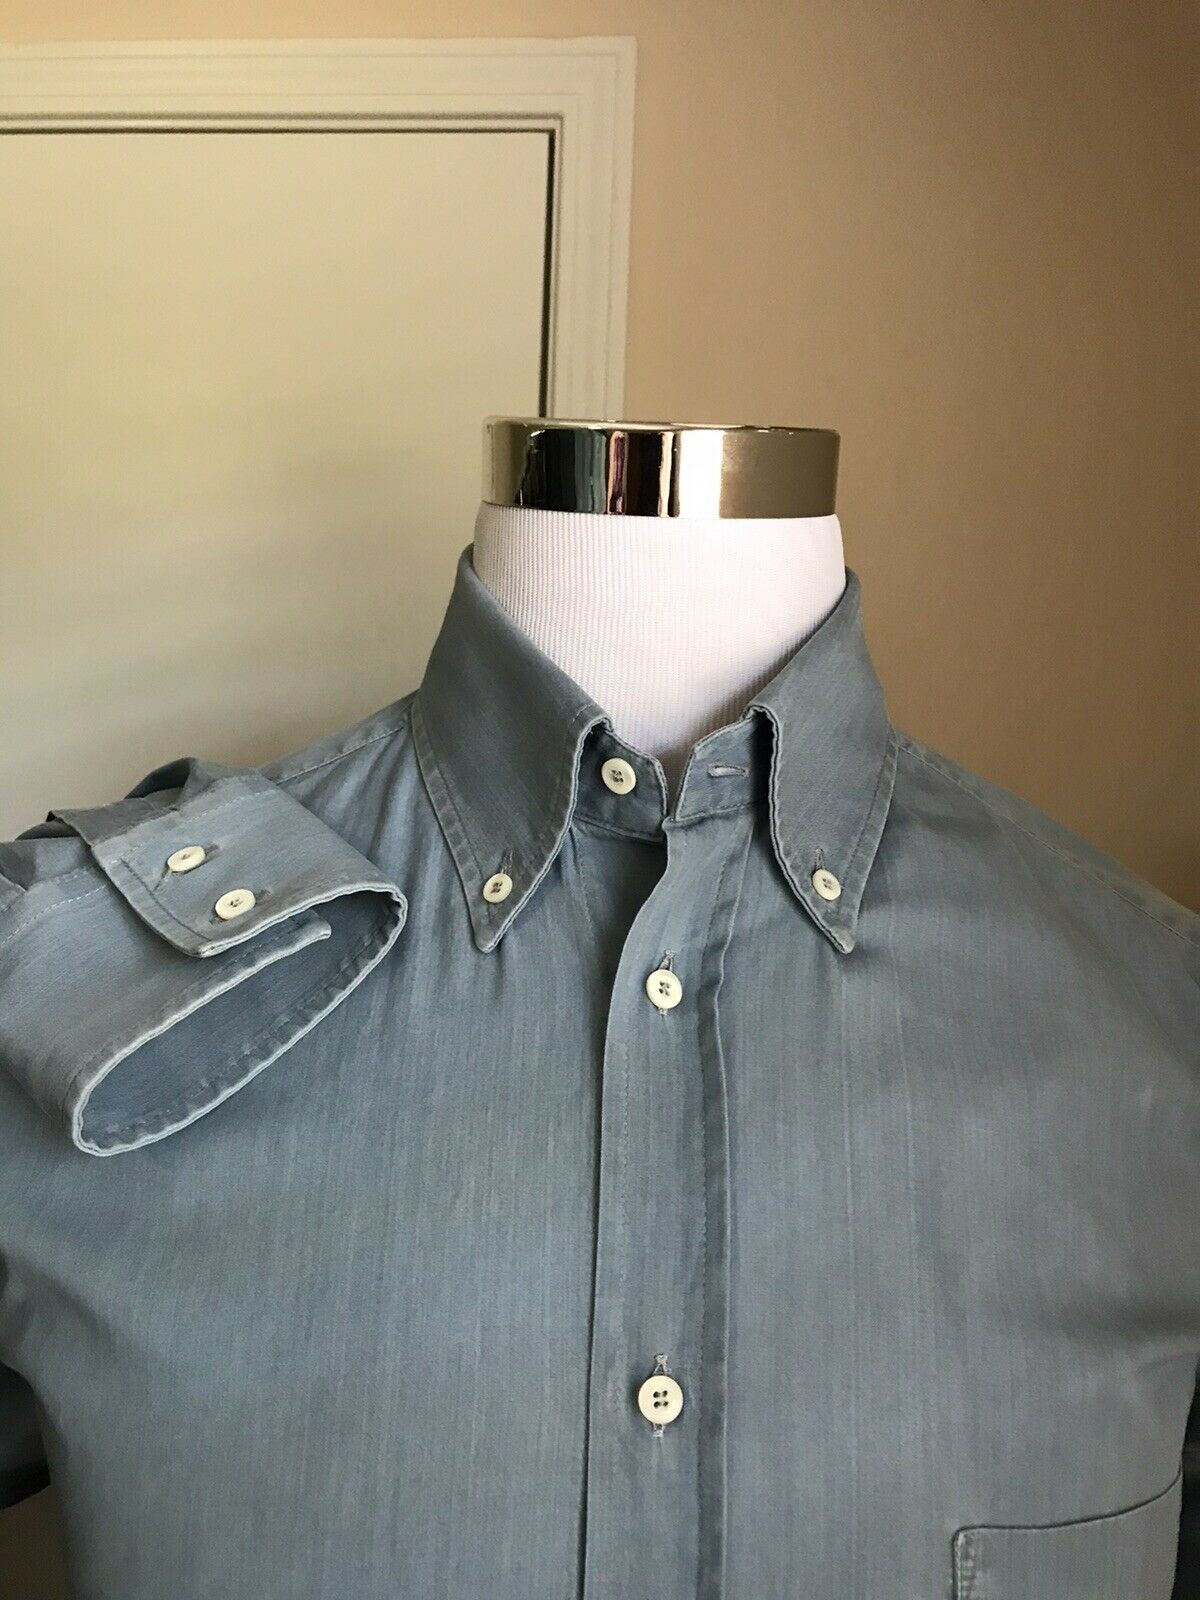 Мужская джинсовая рубашка базового кроя Brunello Cucinelli стоимостью 795 долларов, синяя, L, Италия